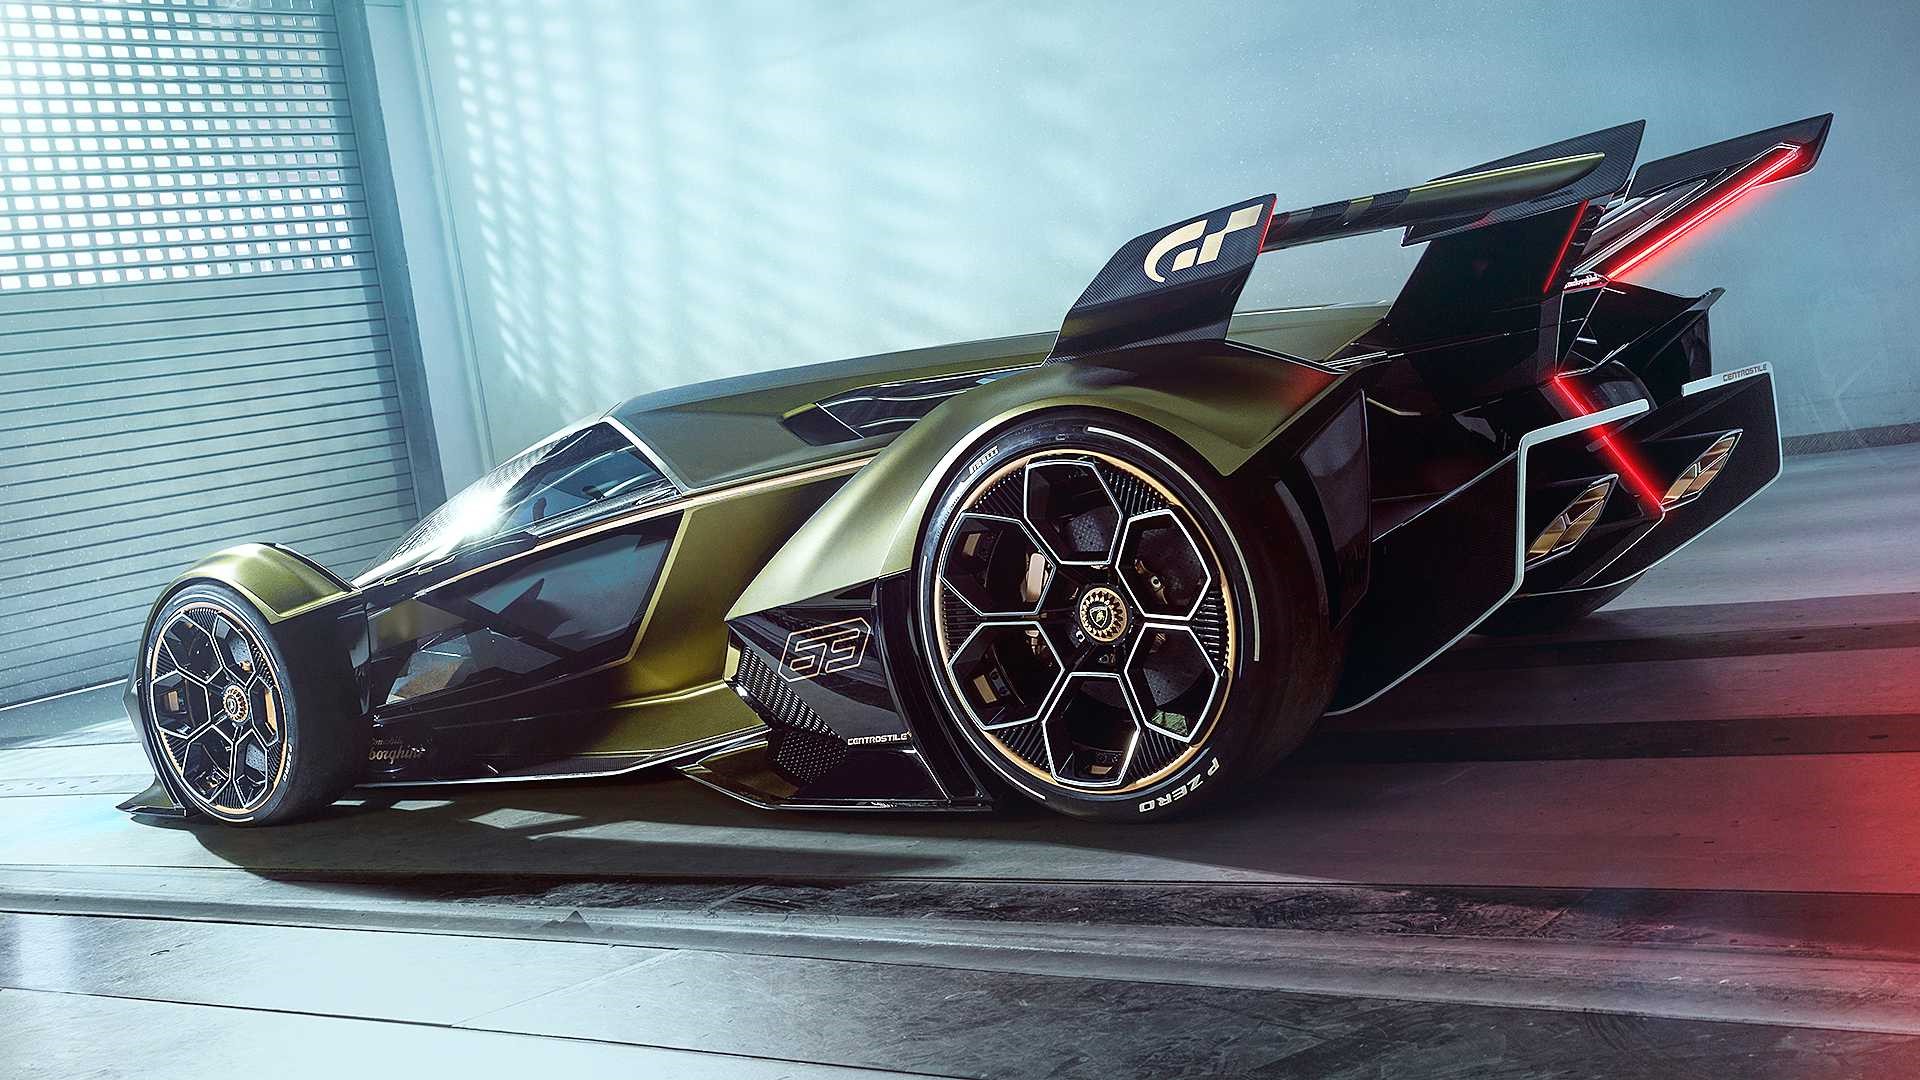 藍寶堅尼新款概念跑車VGT發布 設計驚豔造型科幻